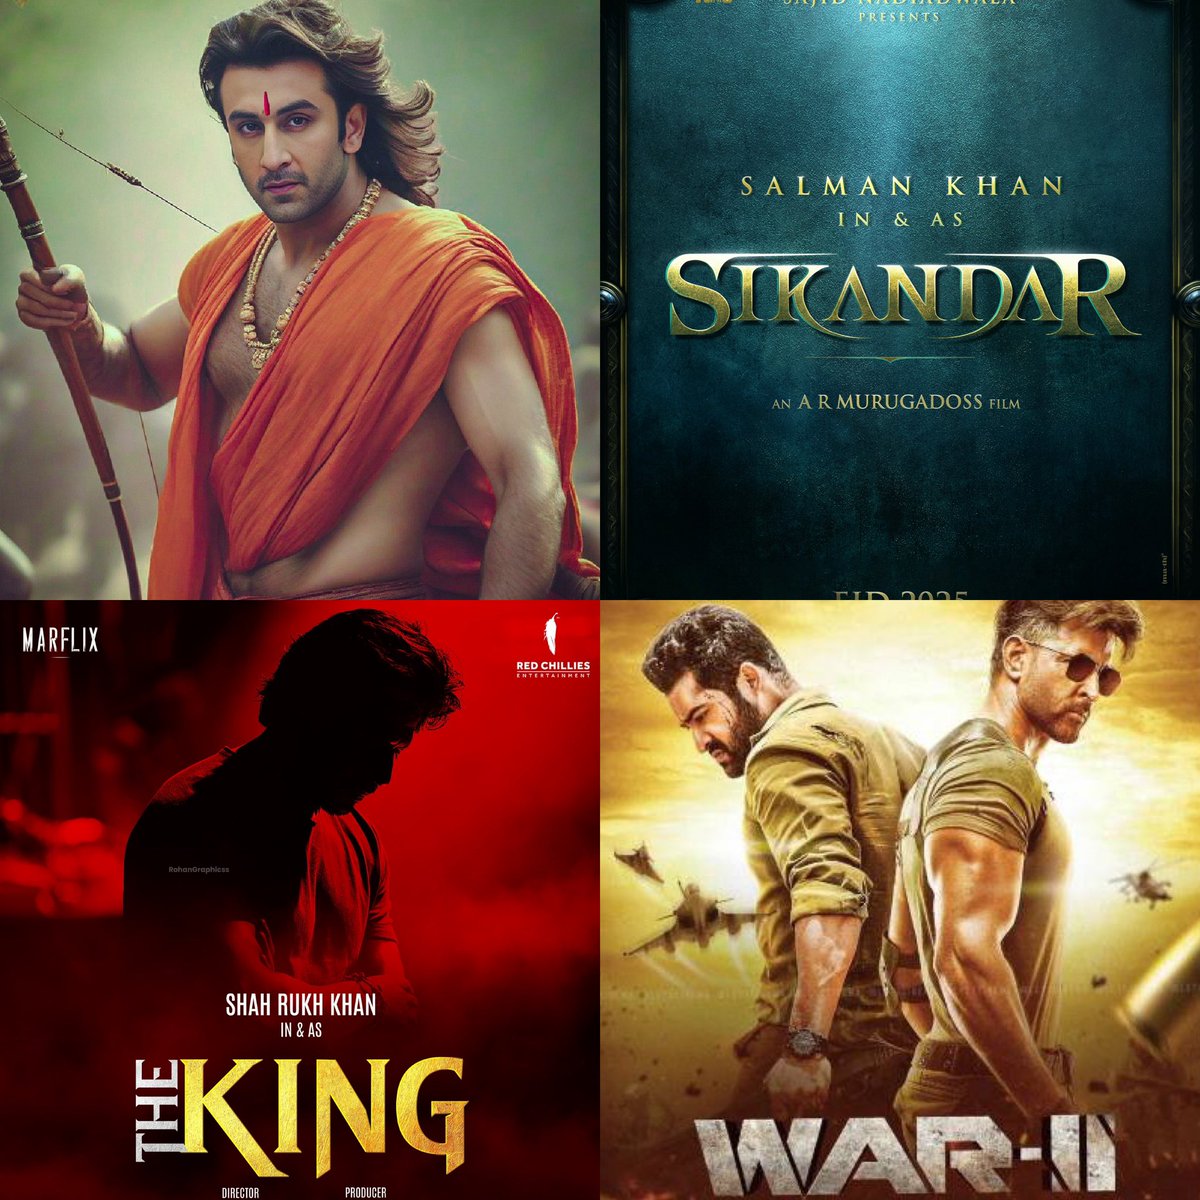 2025 ek bara saal hone wala hain movie lovers ke liye !
Toh calendar mein date sath karlo..
1) #Ramayana (Ranbir Kapoor)
2) #Sikandar (Salman Khan)
3) #TheKingTheBoss (Shahrukh Khan)
4) #War2 (Jr NTR vs Hrithik Roshan)